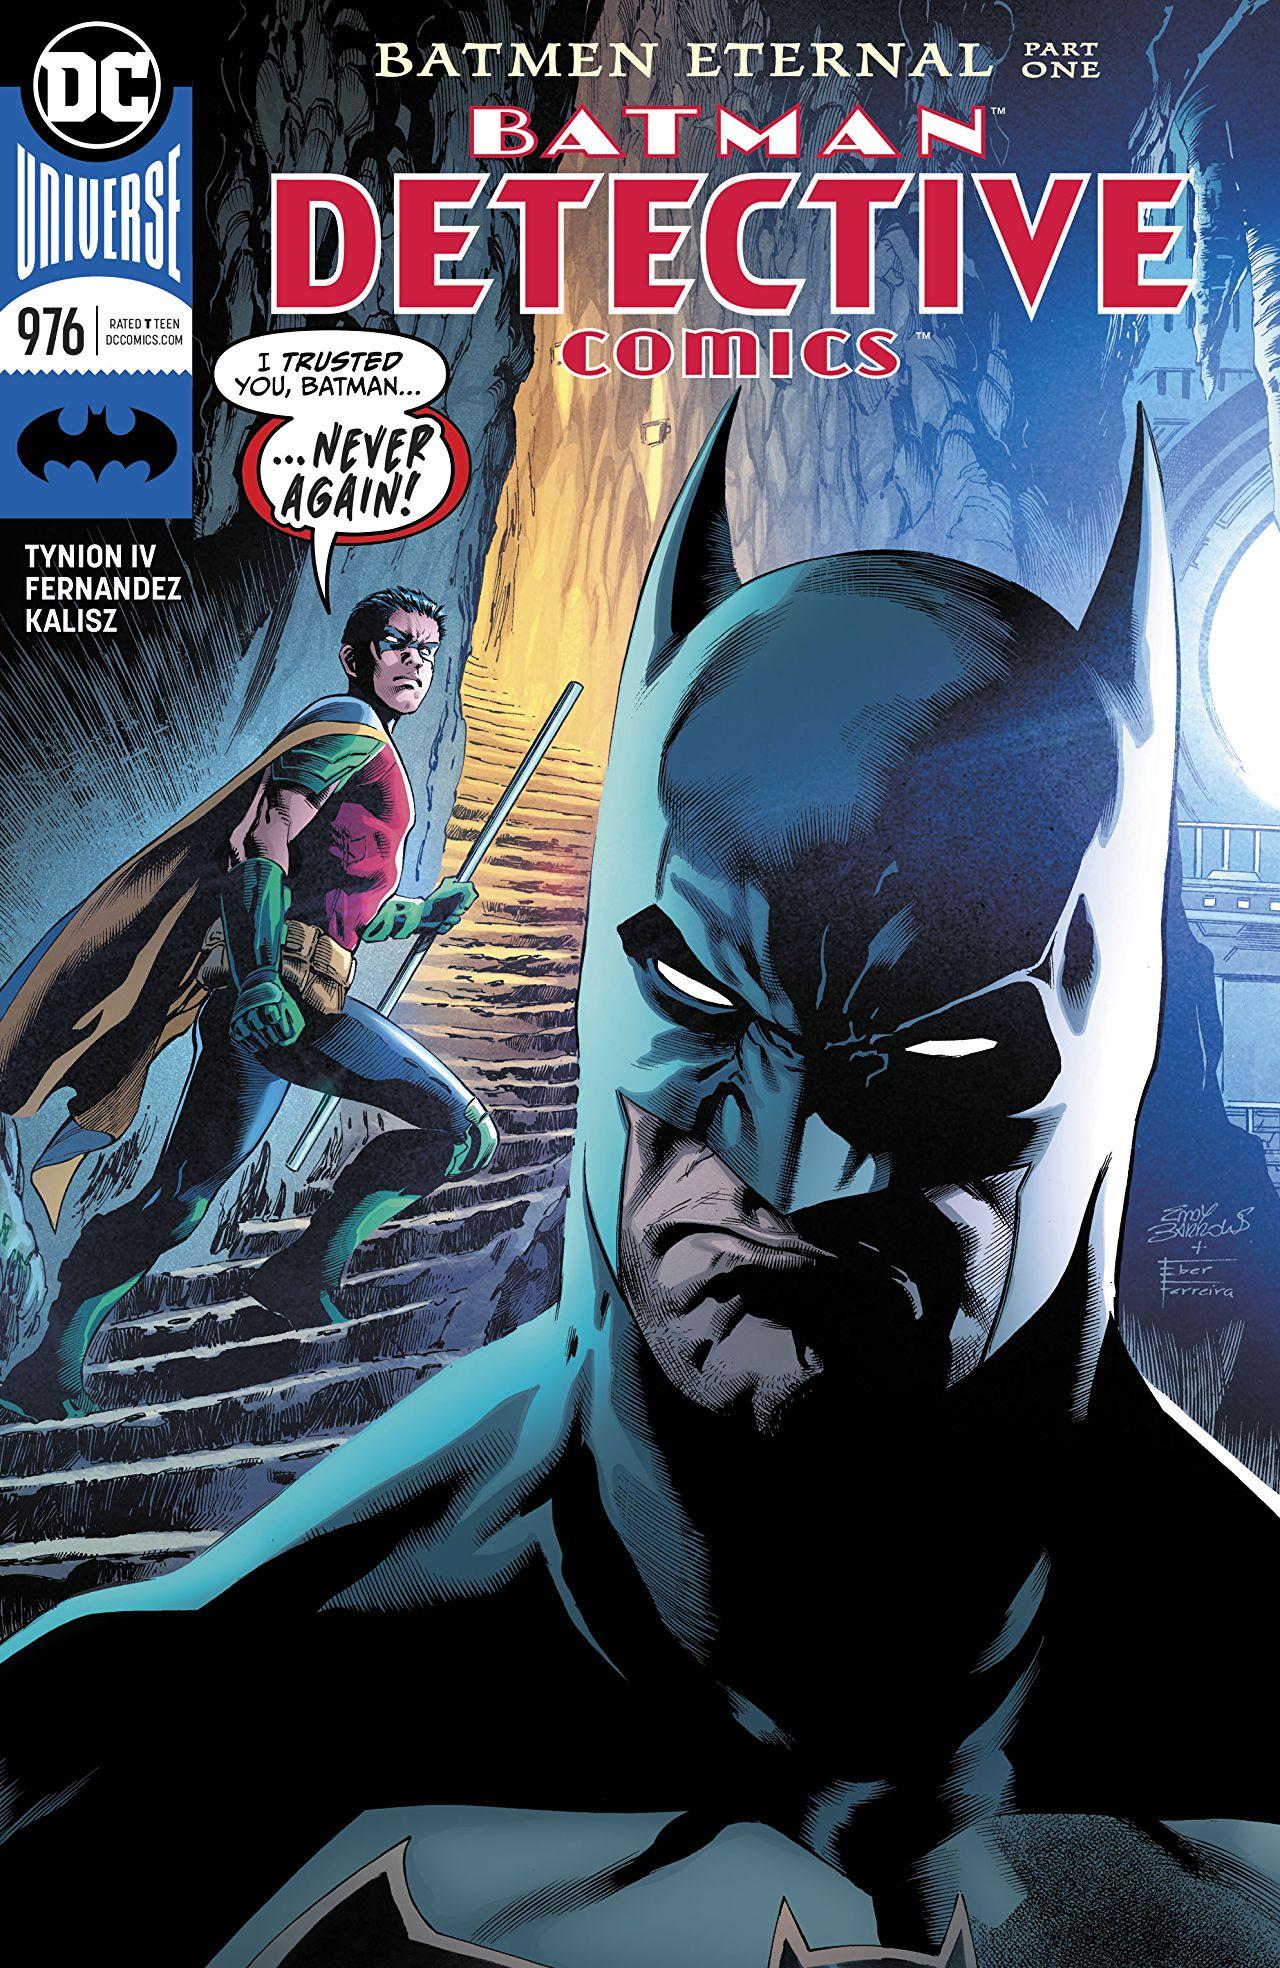 Detective Comics Vol. 1 #976